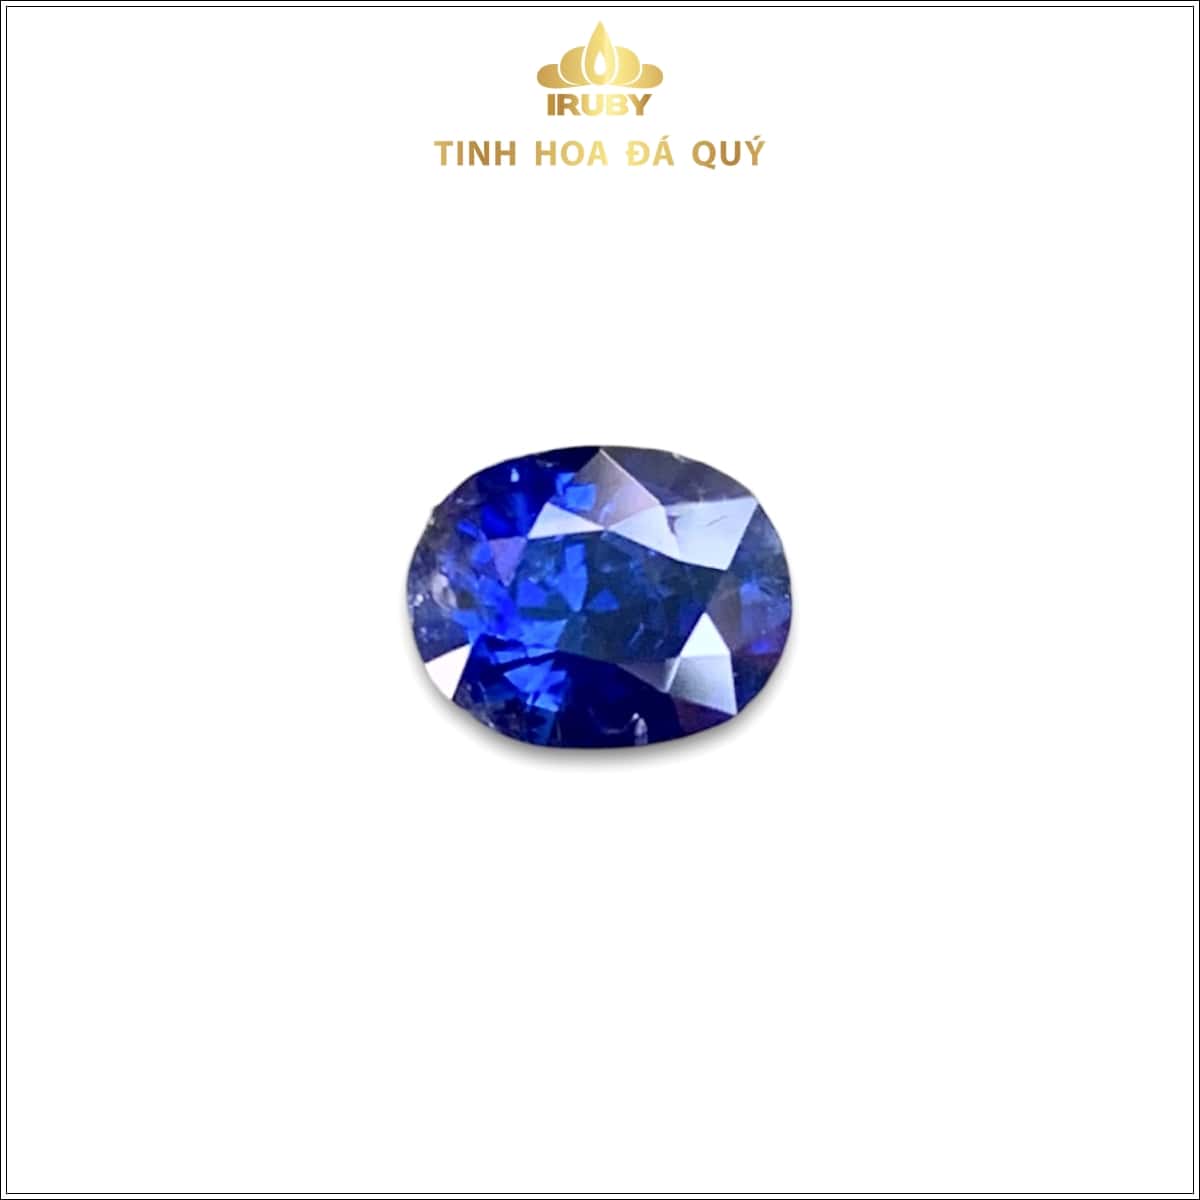 Viên Sapphire xanh lam hoàng gia 1,64ct - IRBS131 2310164